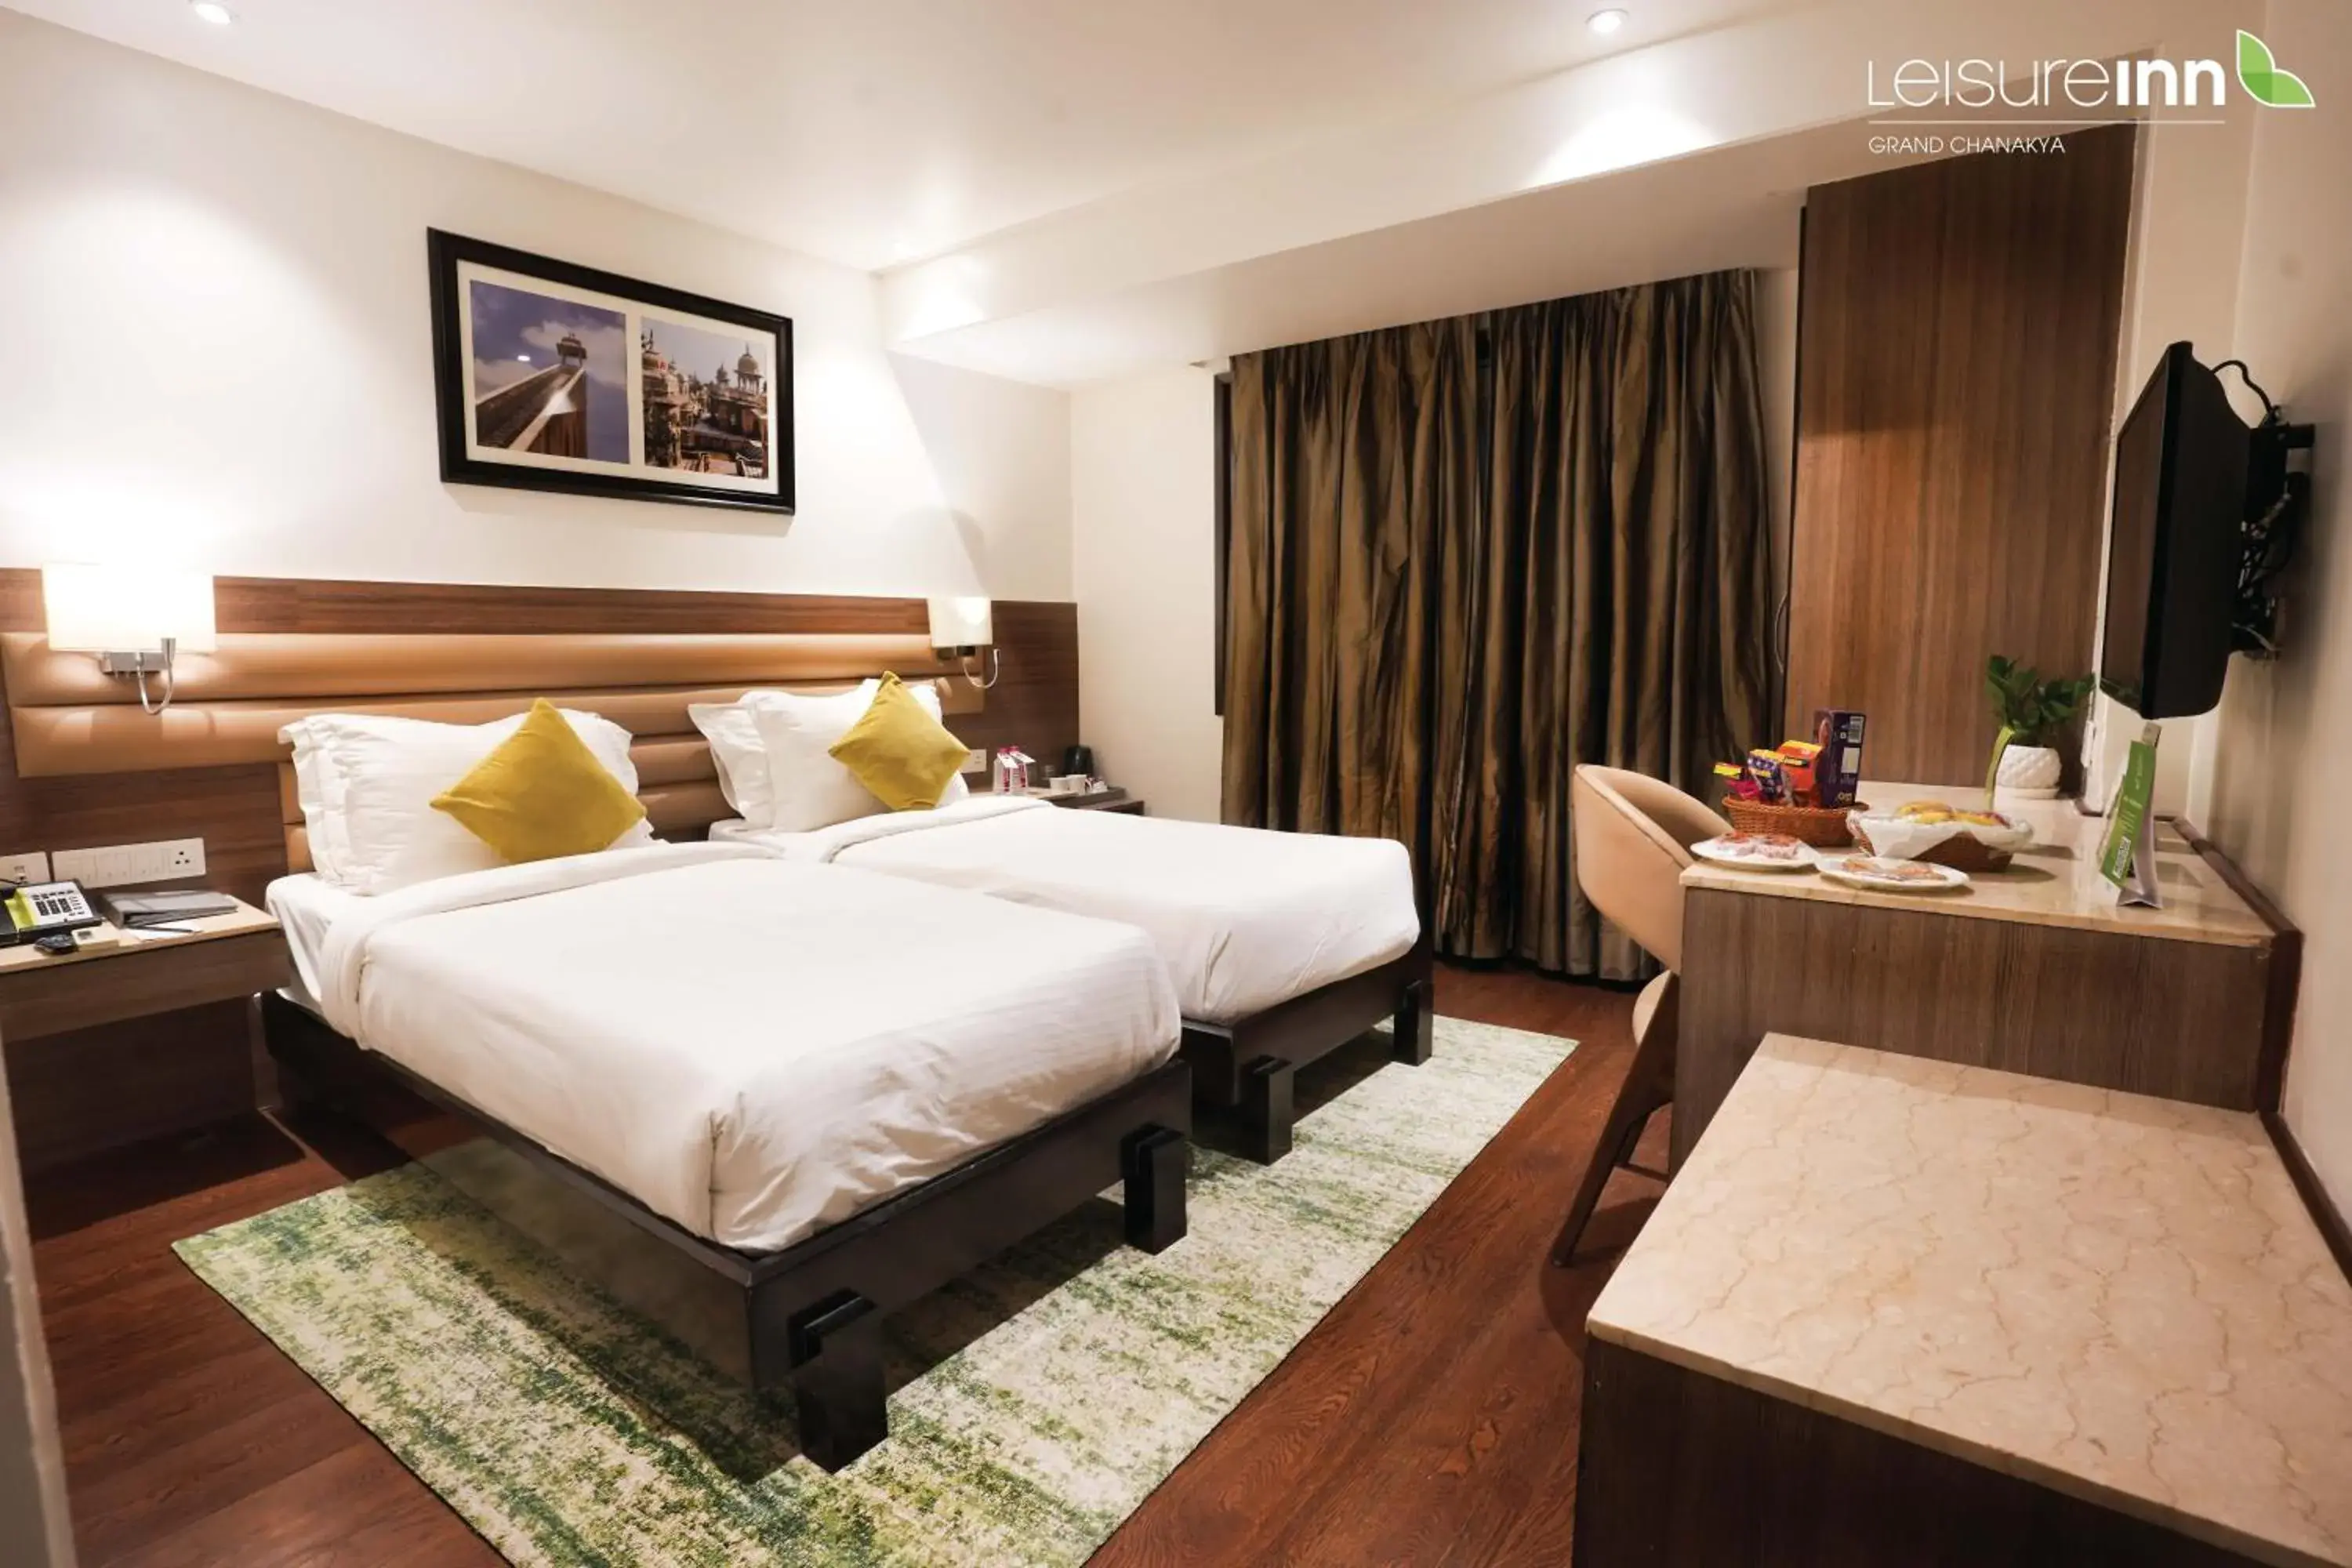 Bed in Leisure Inn Grand Chanakya